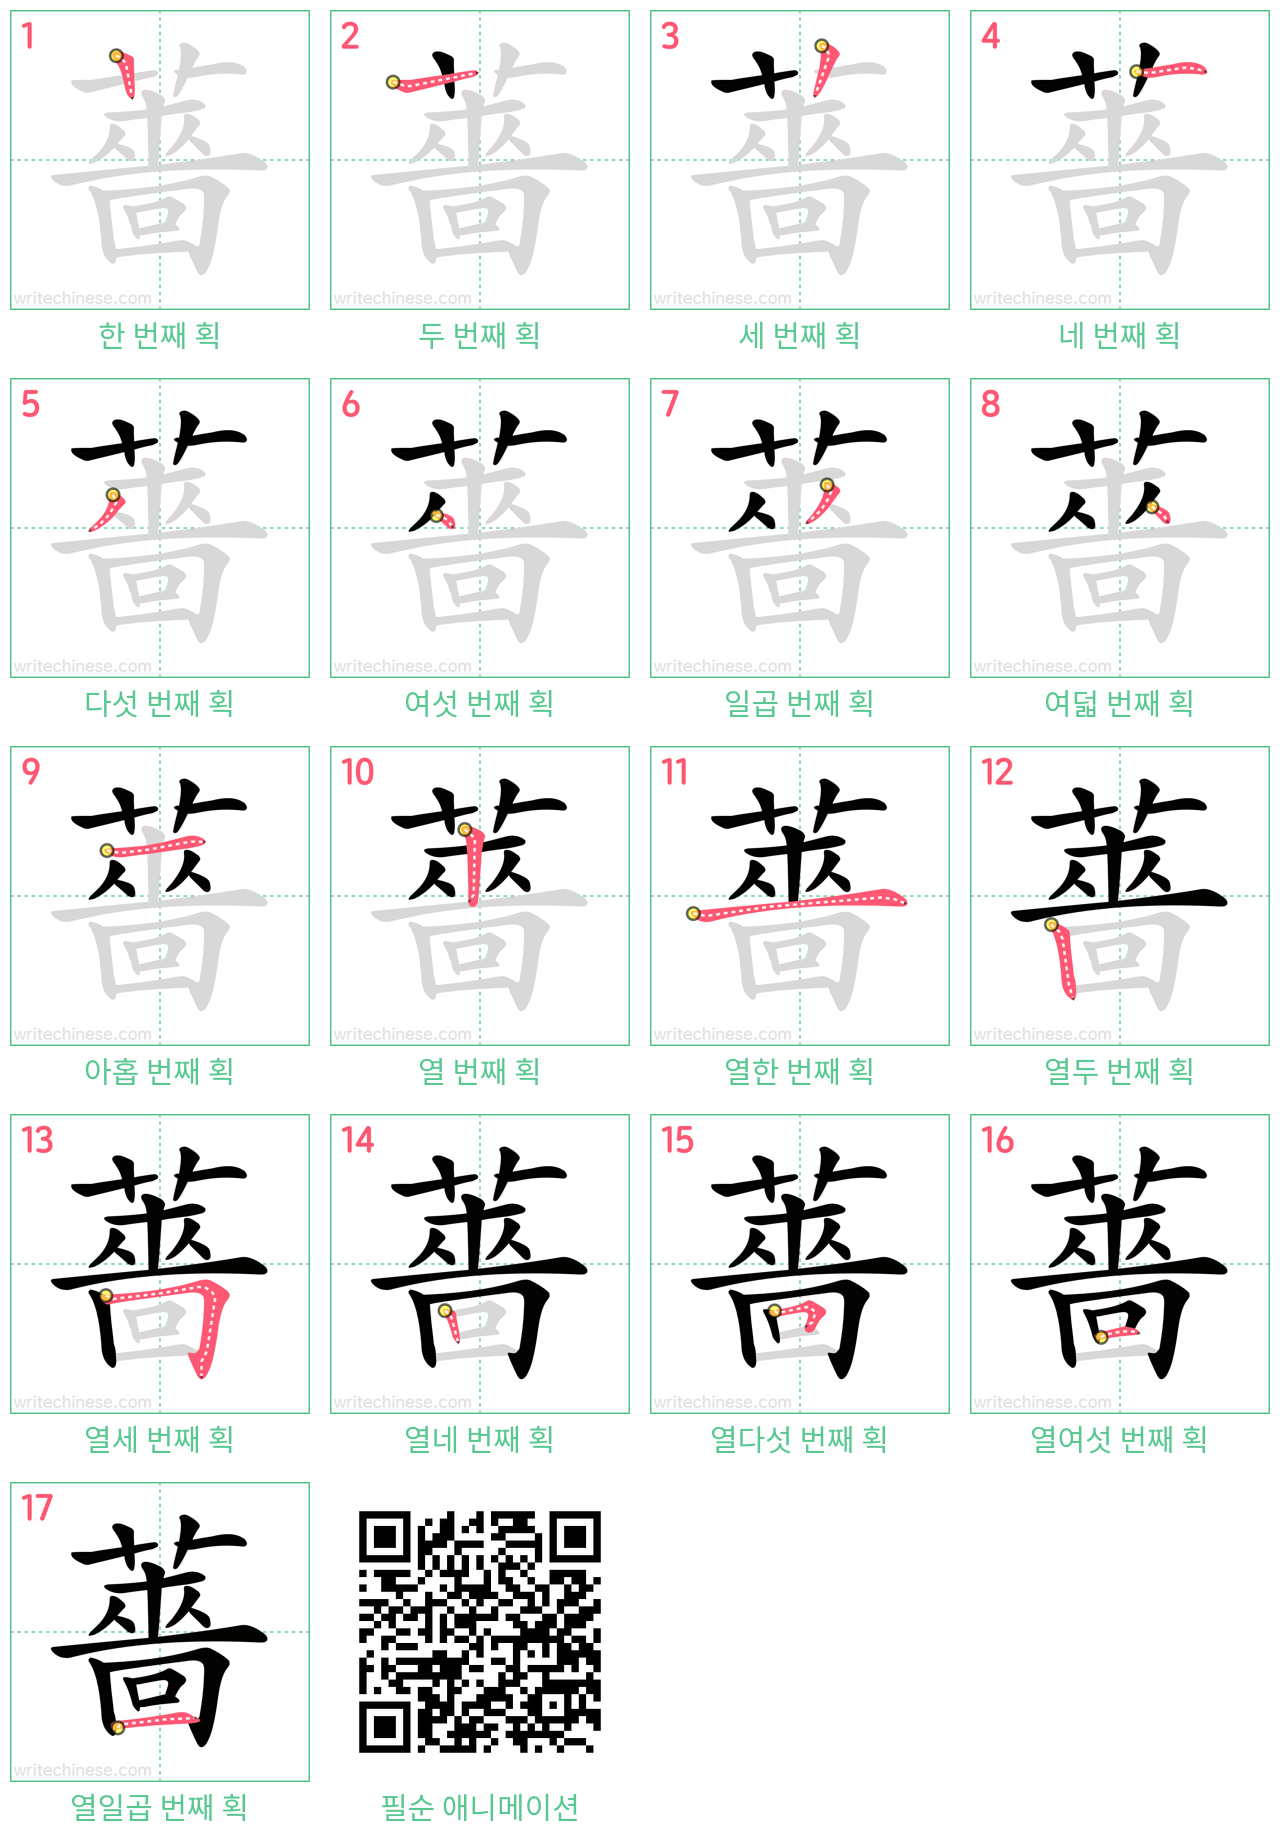 薔 step-by-step stroke order diagrams